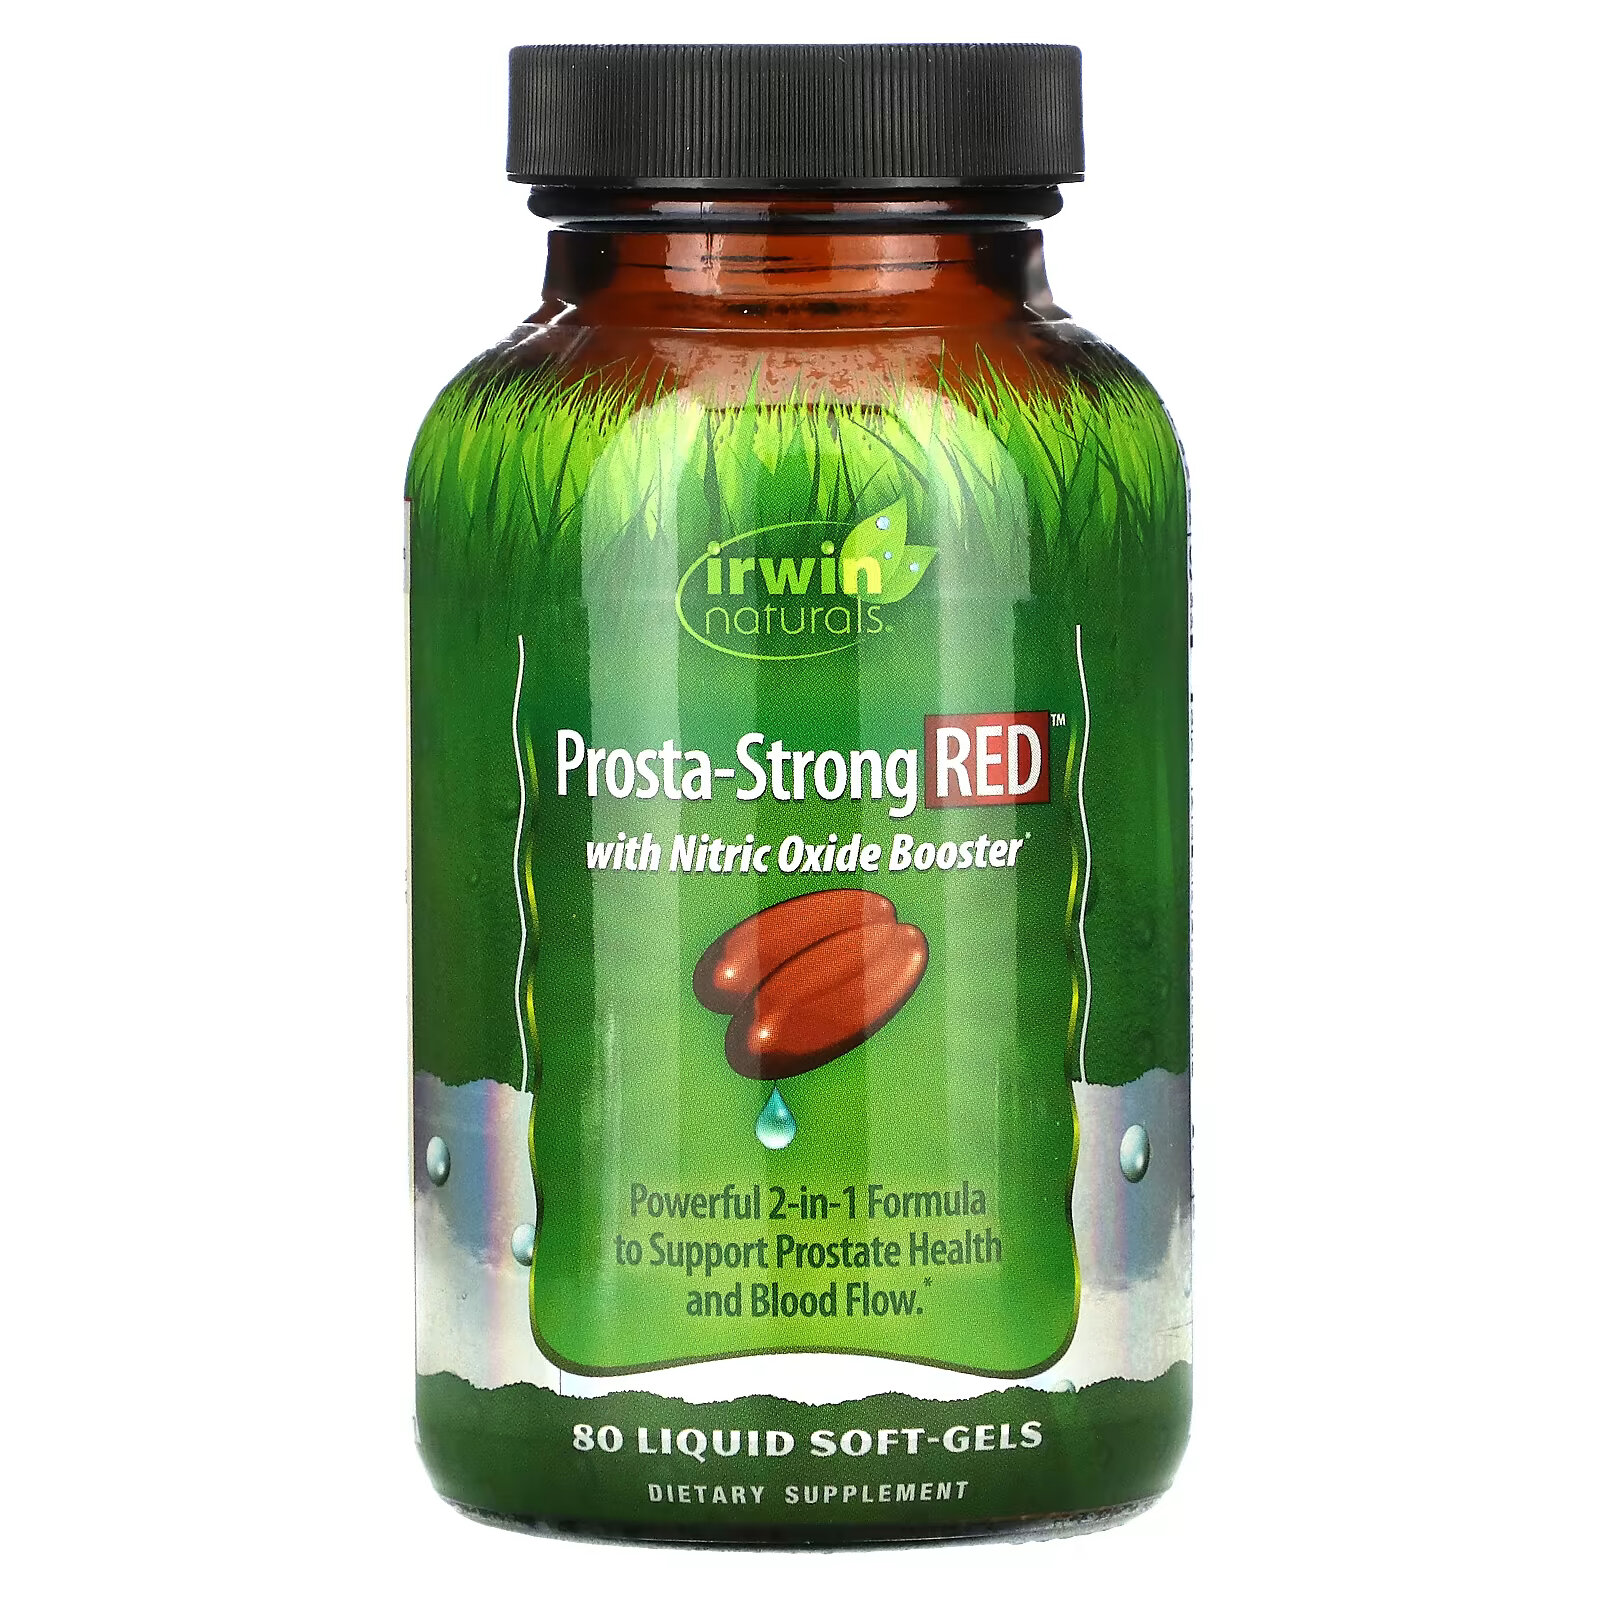 Irwin Naturals, Prosta-Strong RED, 80 мягких капсул с жидкостью irwin naturals estropause поддержка в период менопаузы 80 мягких желатиновых капсул с жидкостью